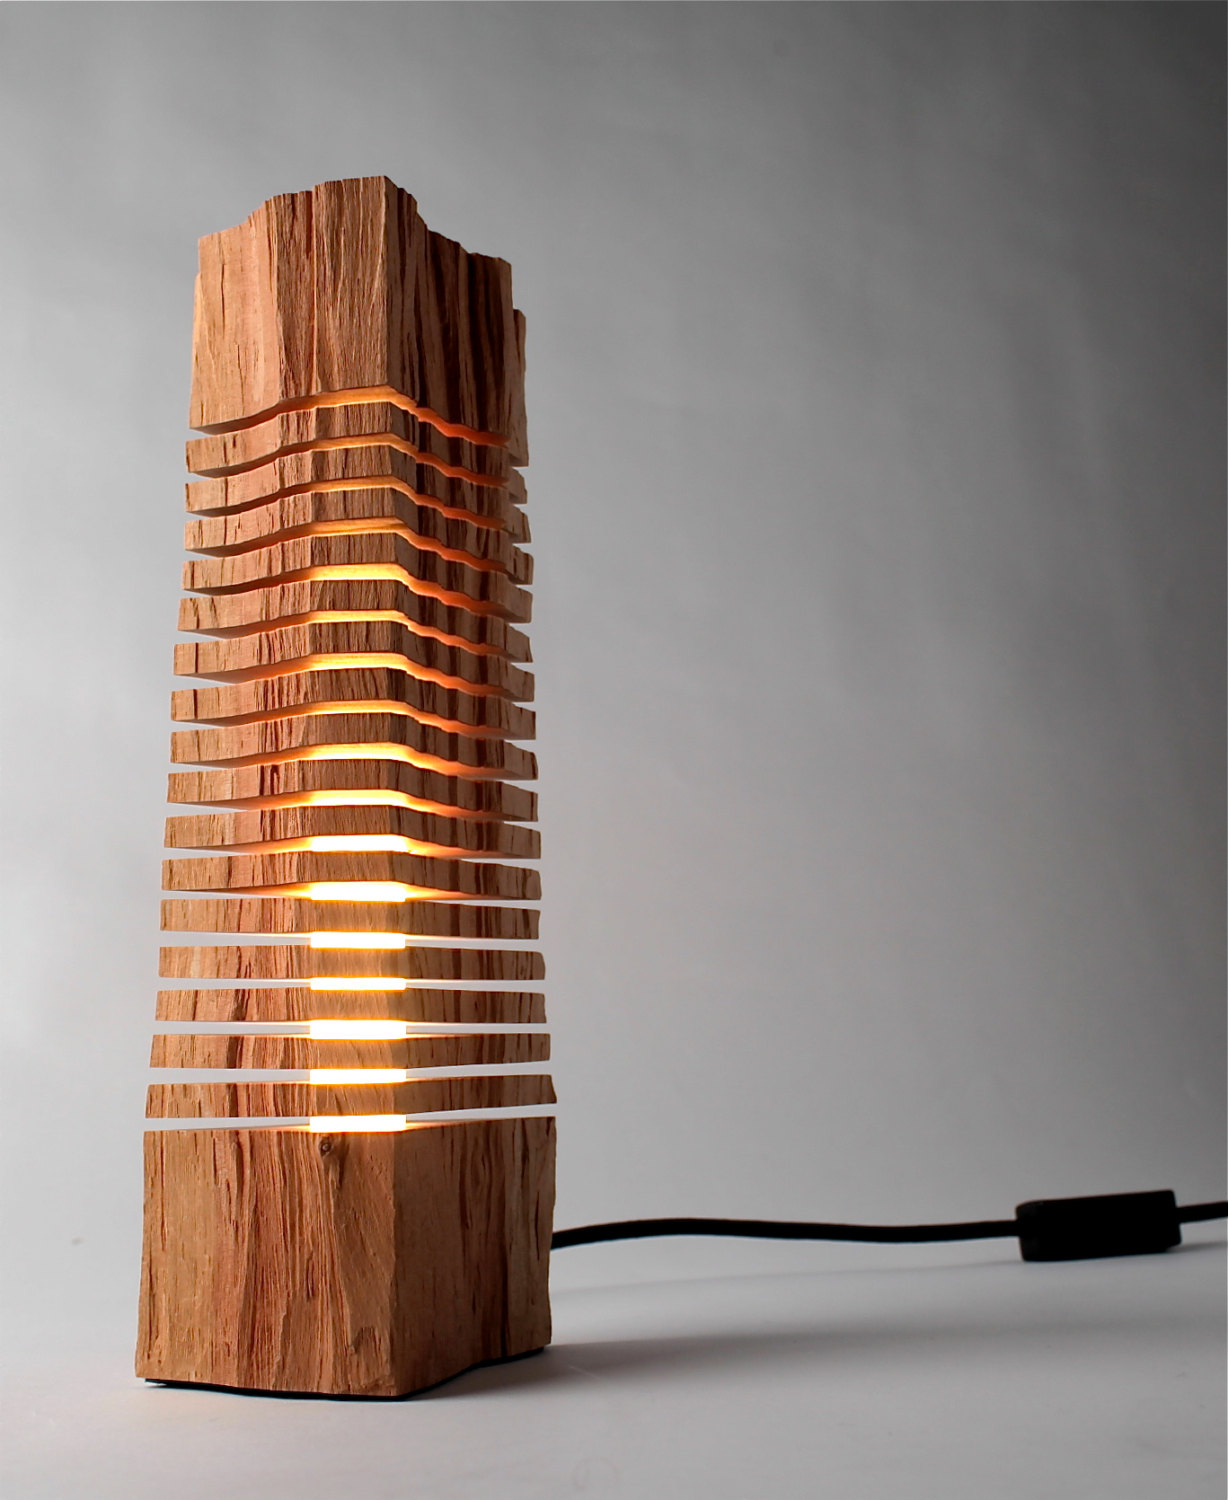 Светильники из дерева «Split Wood Lights» от художника Paul Foeckler